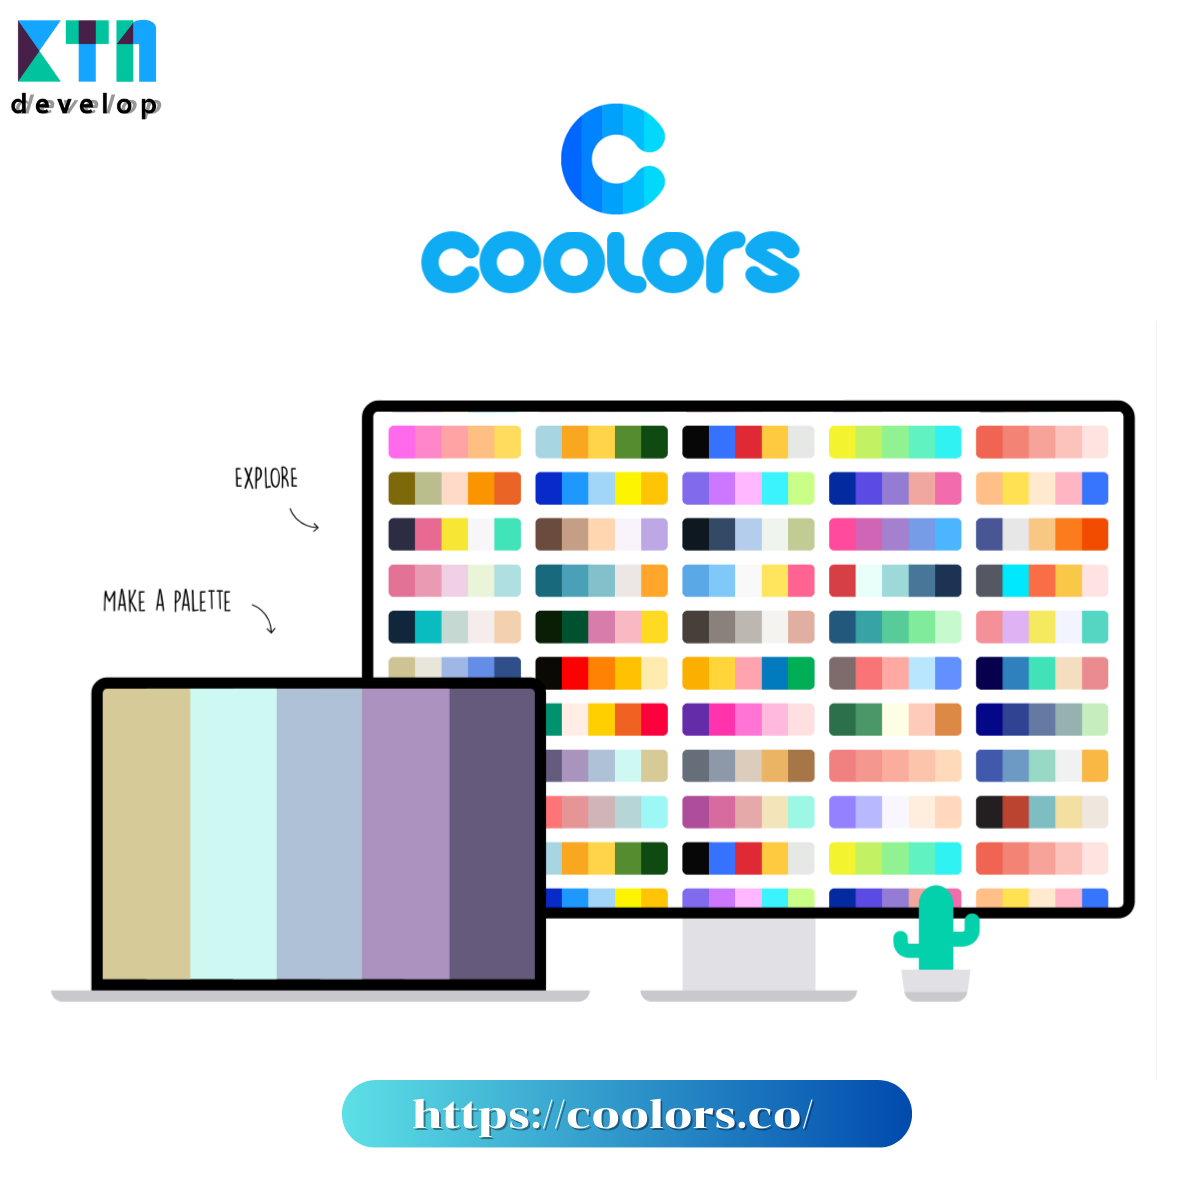 5 เว็บไซต์ ให้คุณเลือกใช้สีในการออกแบบเว็บไซต์แบบมืออาชีพ